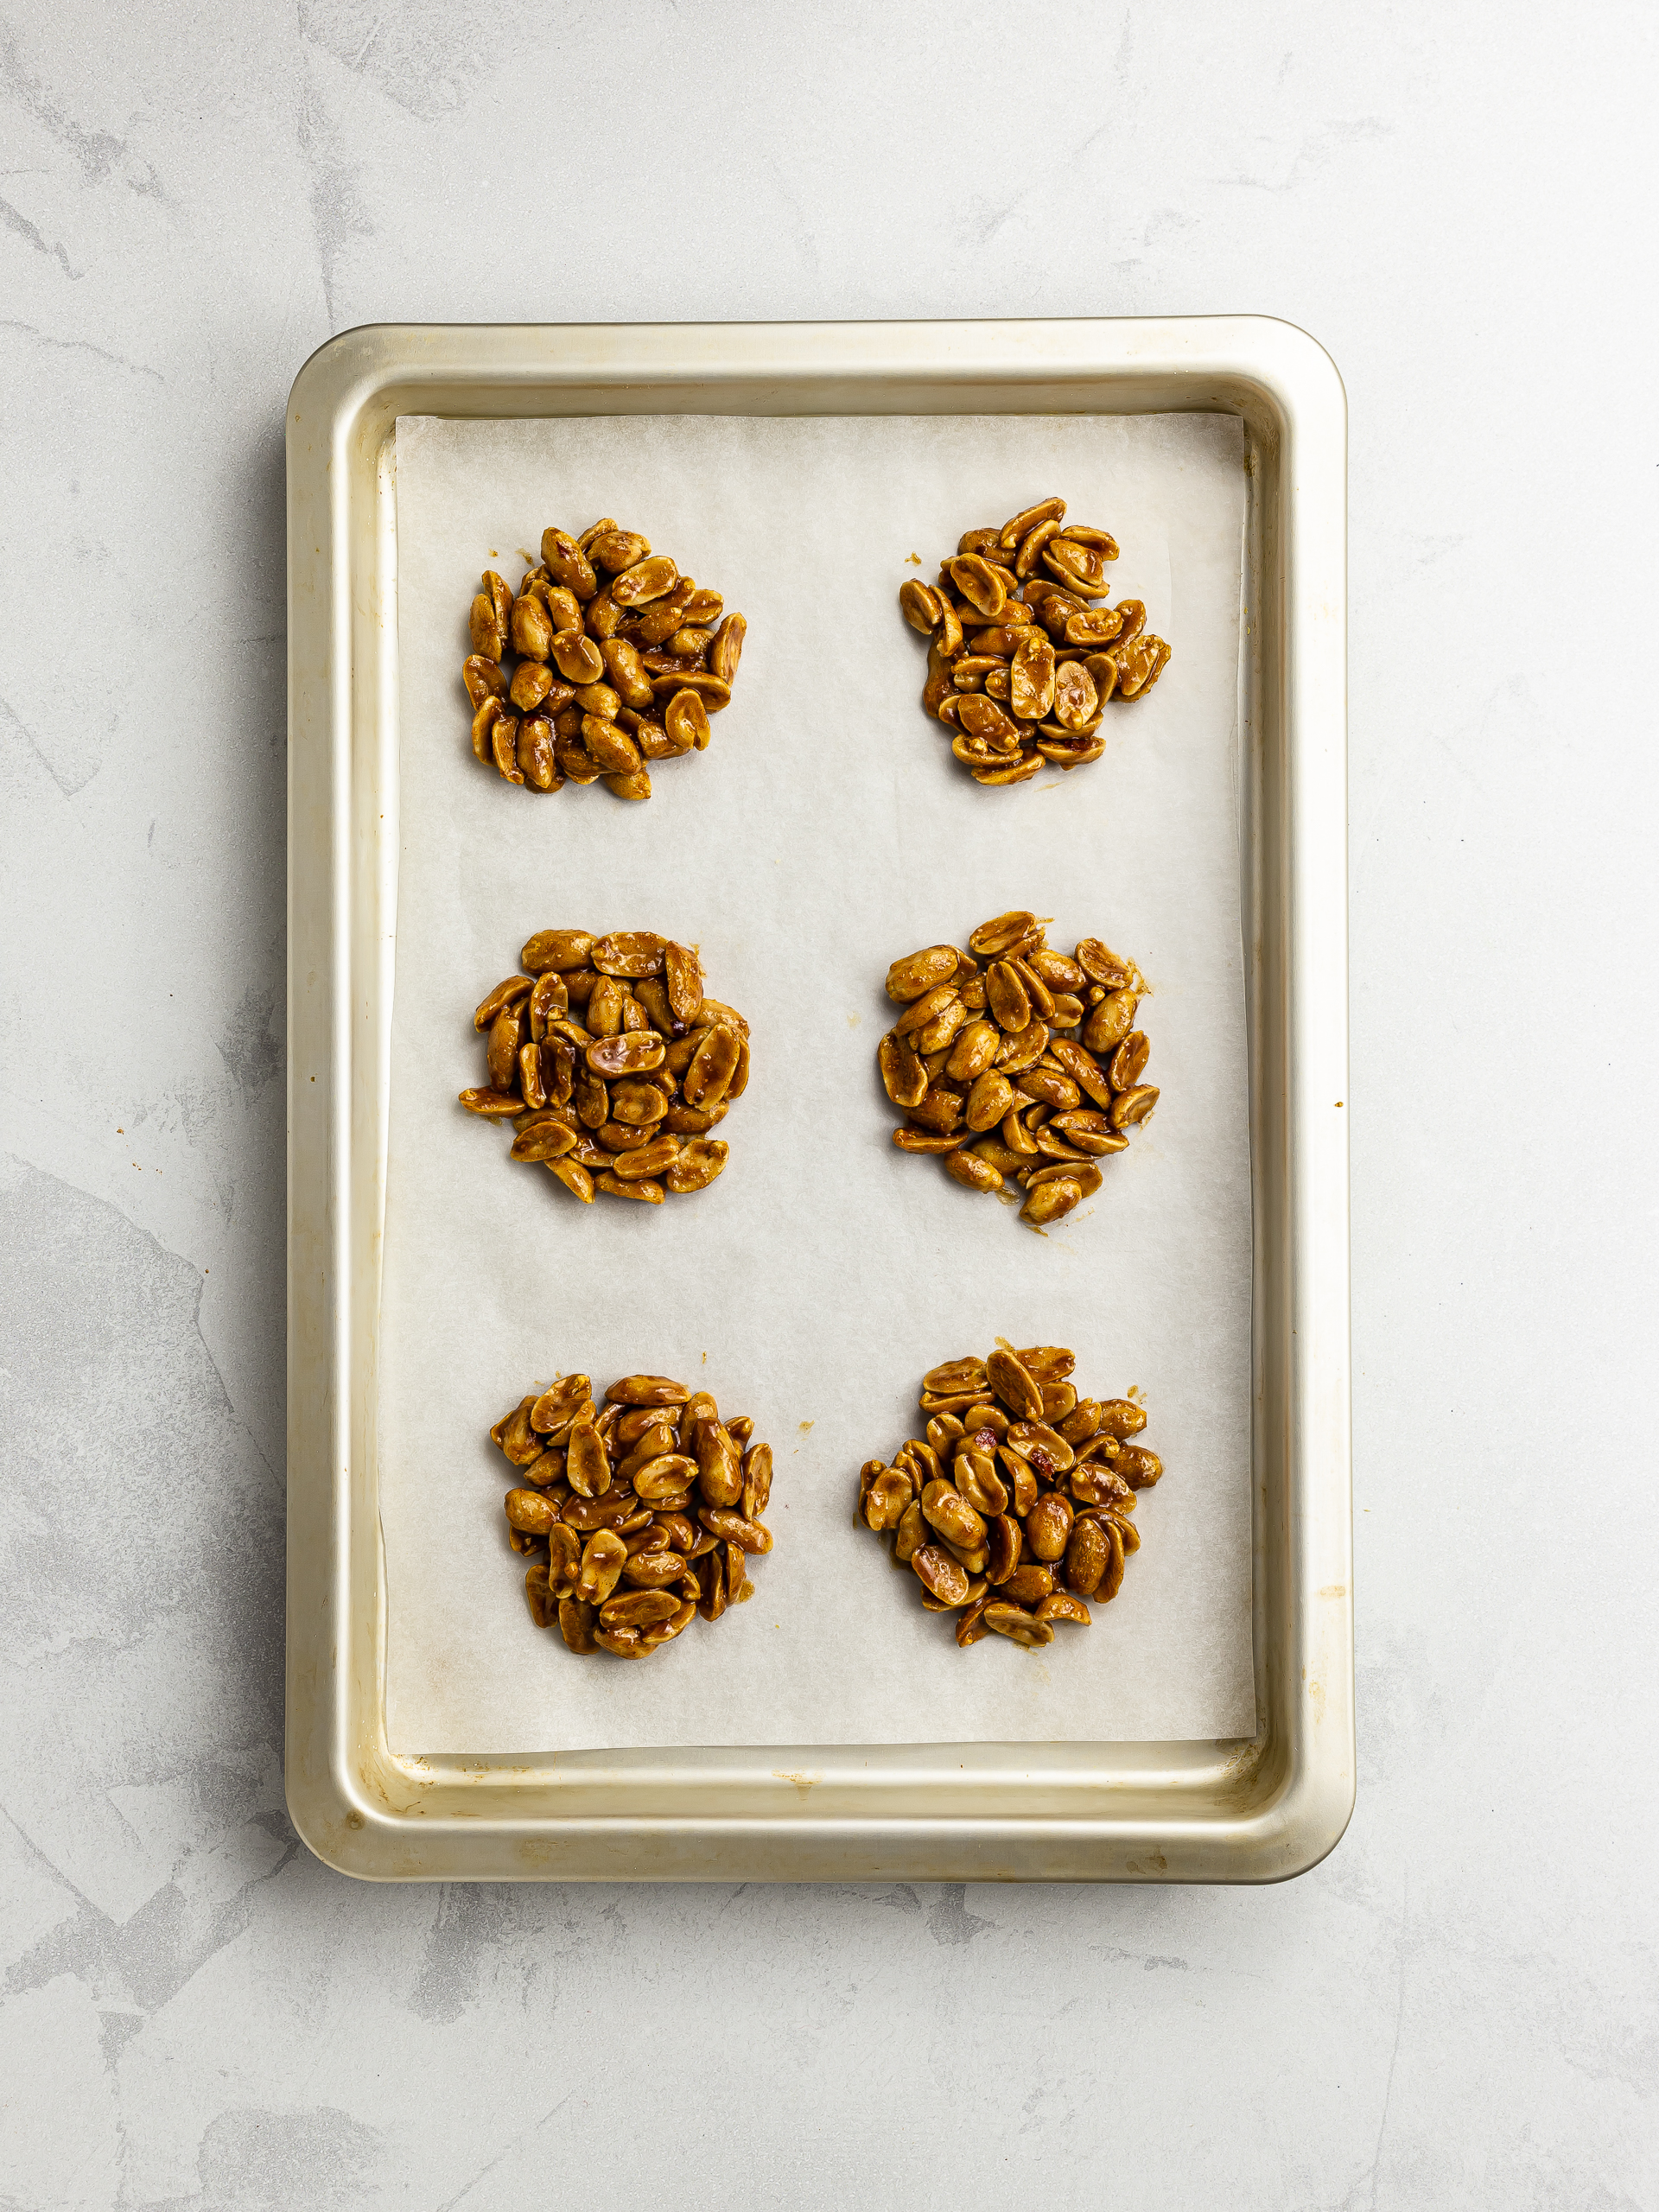 peanut drops on a baking tray